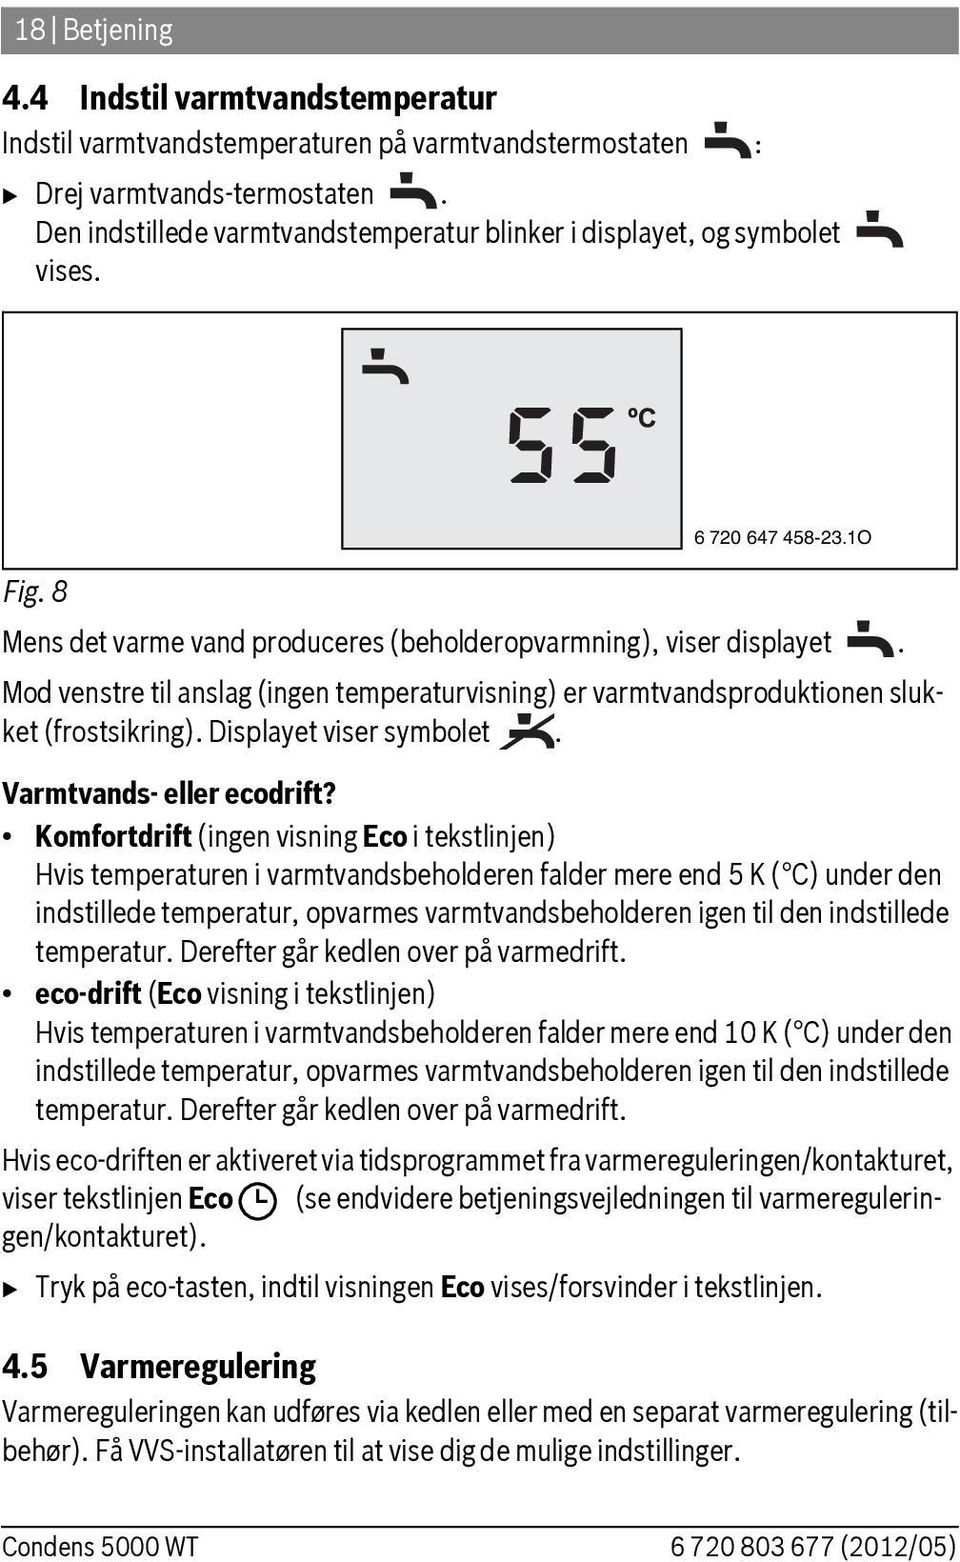 Mod venstre til anslag (ingen temperaturvisning) er varmtvandsproduktionen slukket (frostsikring). Displayet viser symbolet. Varmtvands- eller ecodrift?